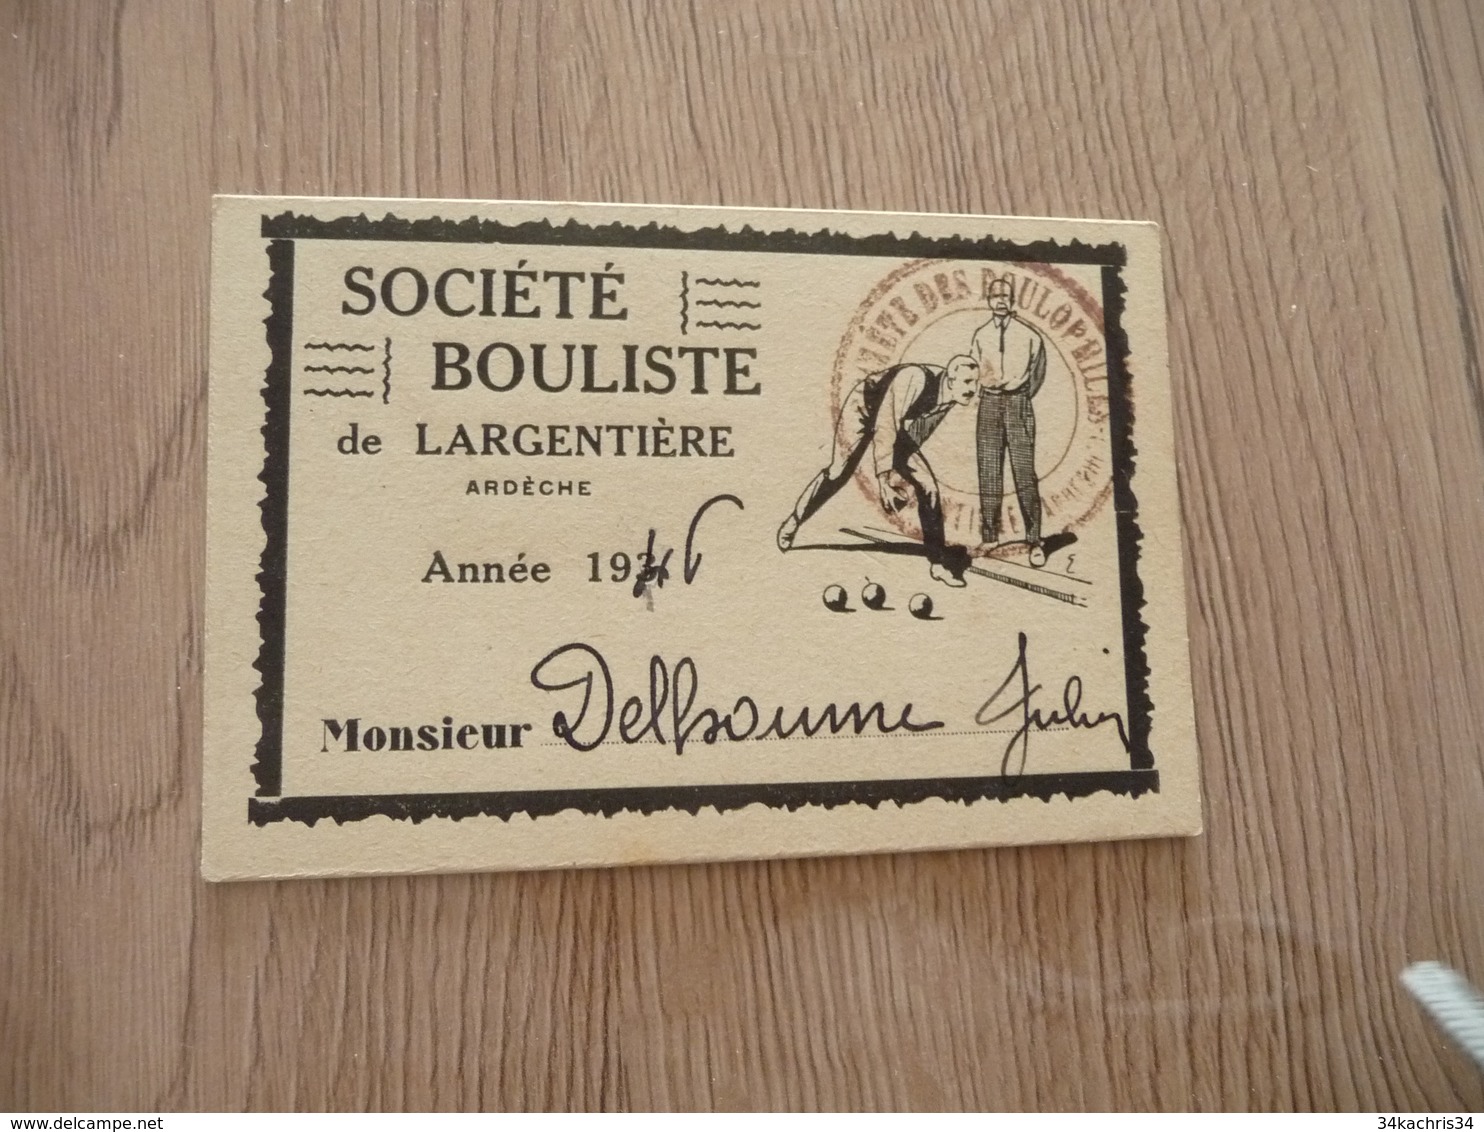 Carte De Membre Pétanque Boules Société Boulistique De Largentière Ardèche 1946 - Bowls - Pétanque